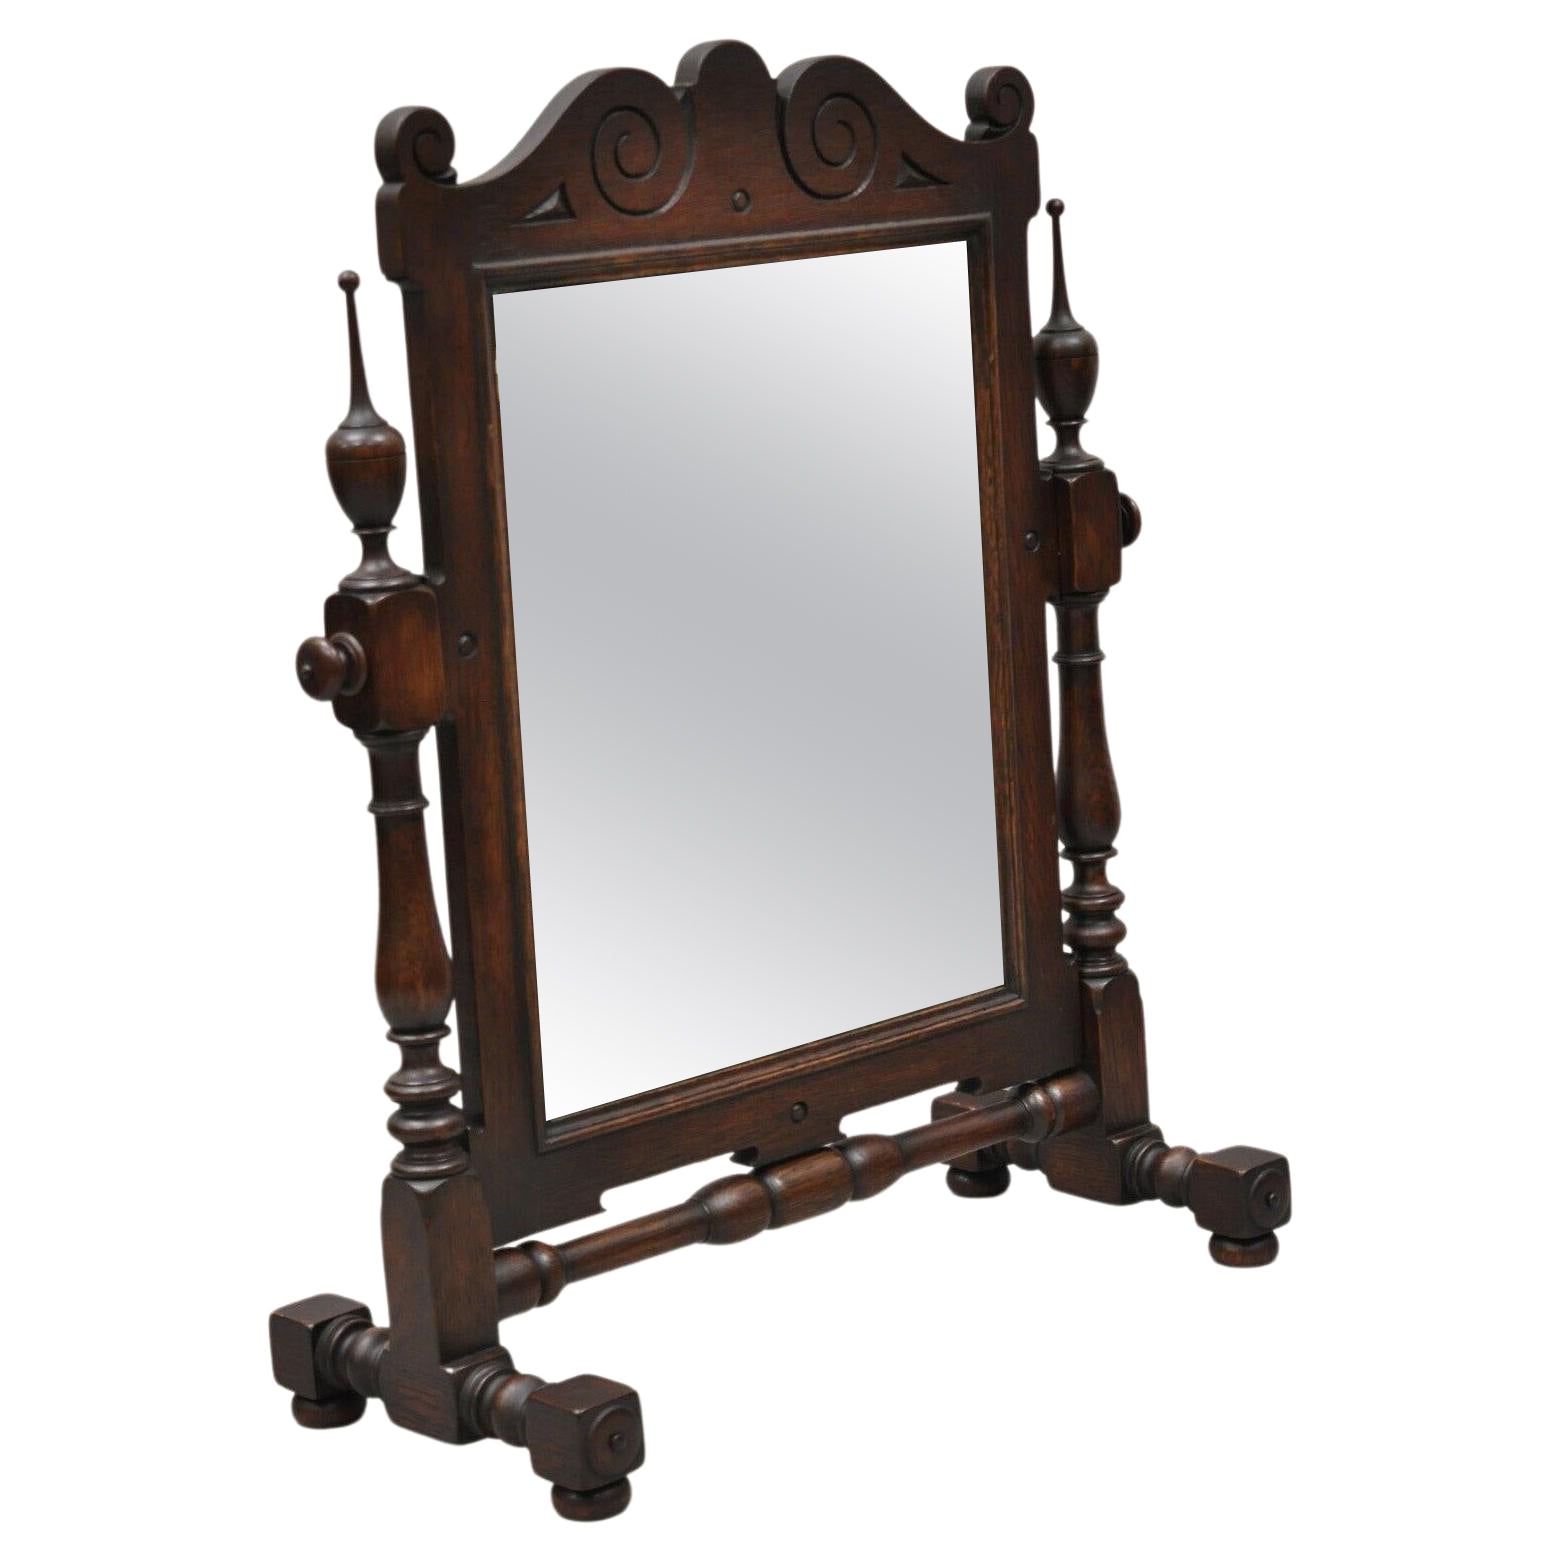 Antique miroir de rasage pivotant de style jacobéen en bois de chêne pour coiffeuse